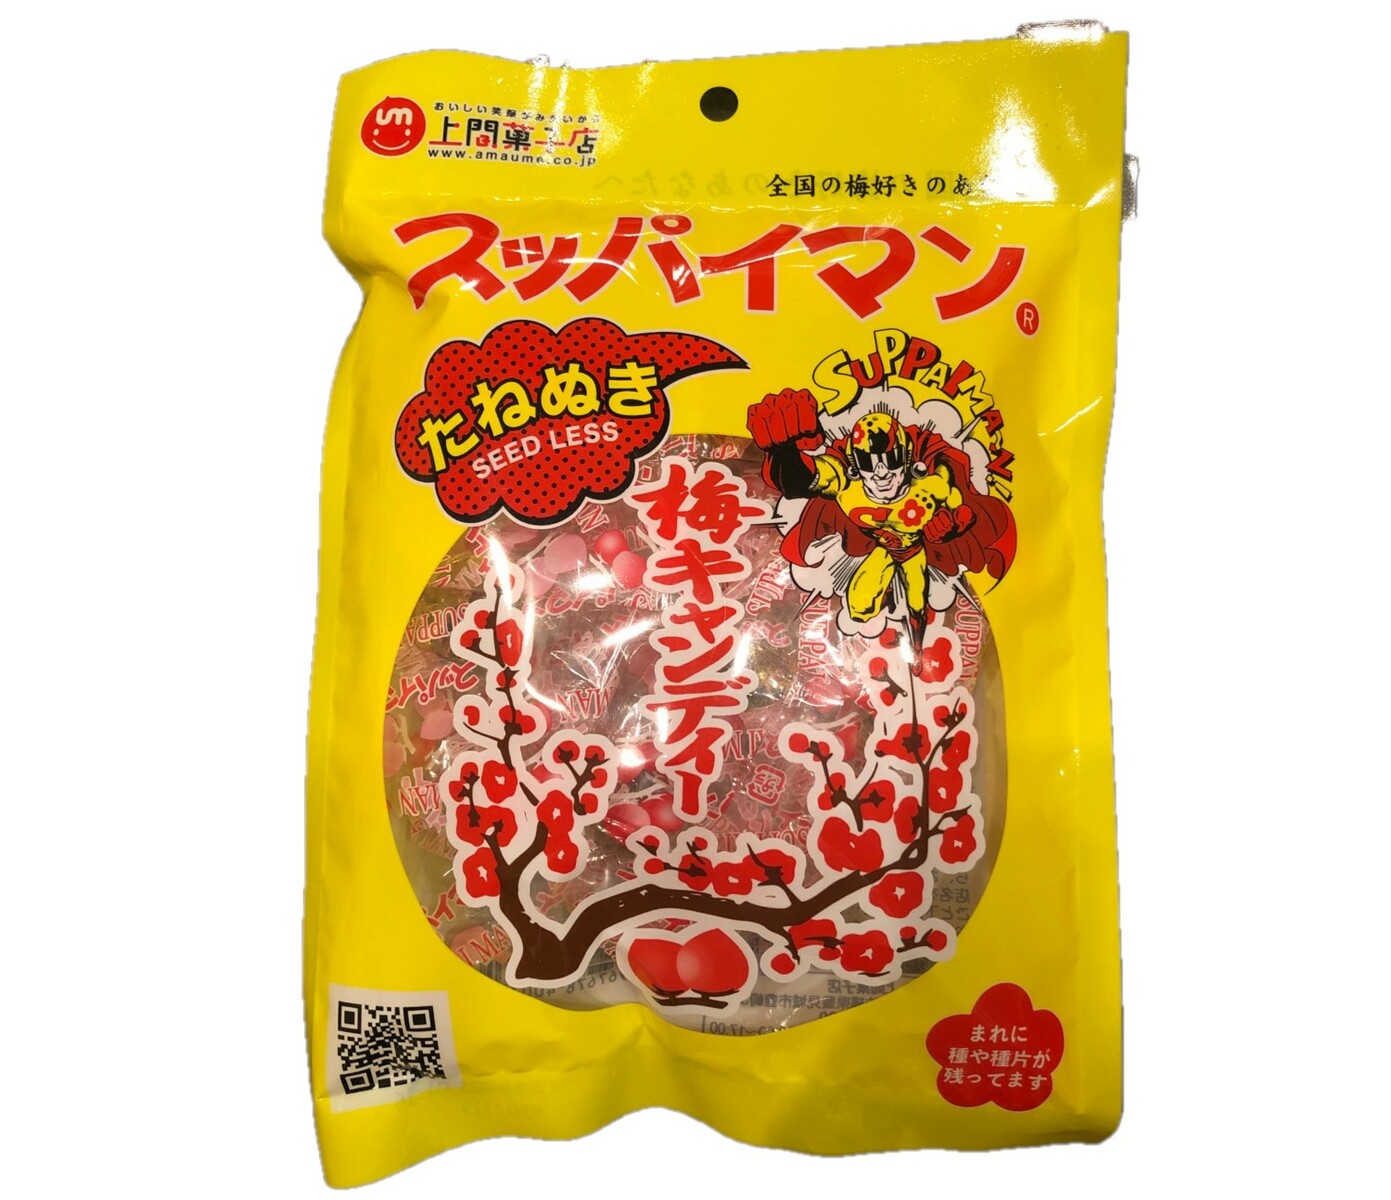 上間菓子店『スッパイマン梅キャンディー』